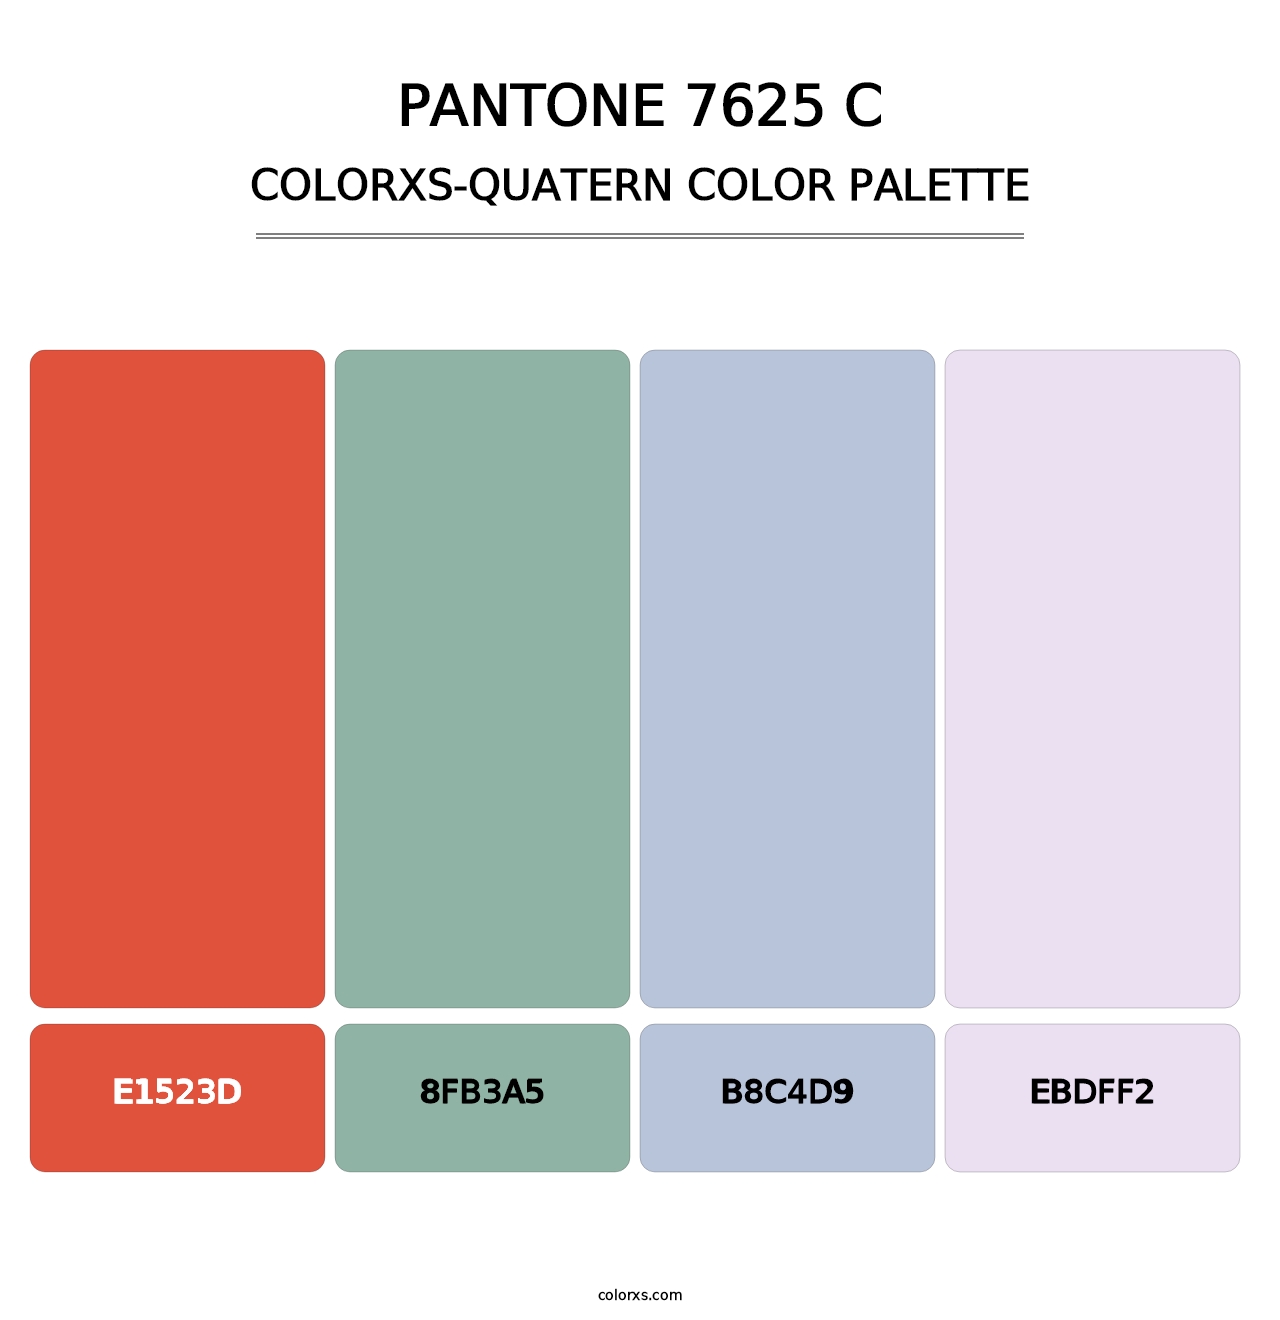 PANTONE 7625 C - Colorxs Quatern Palette